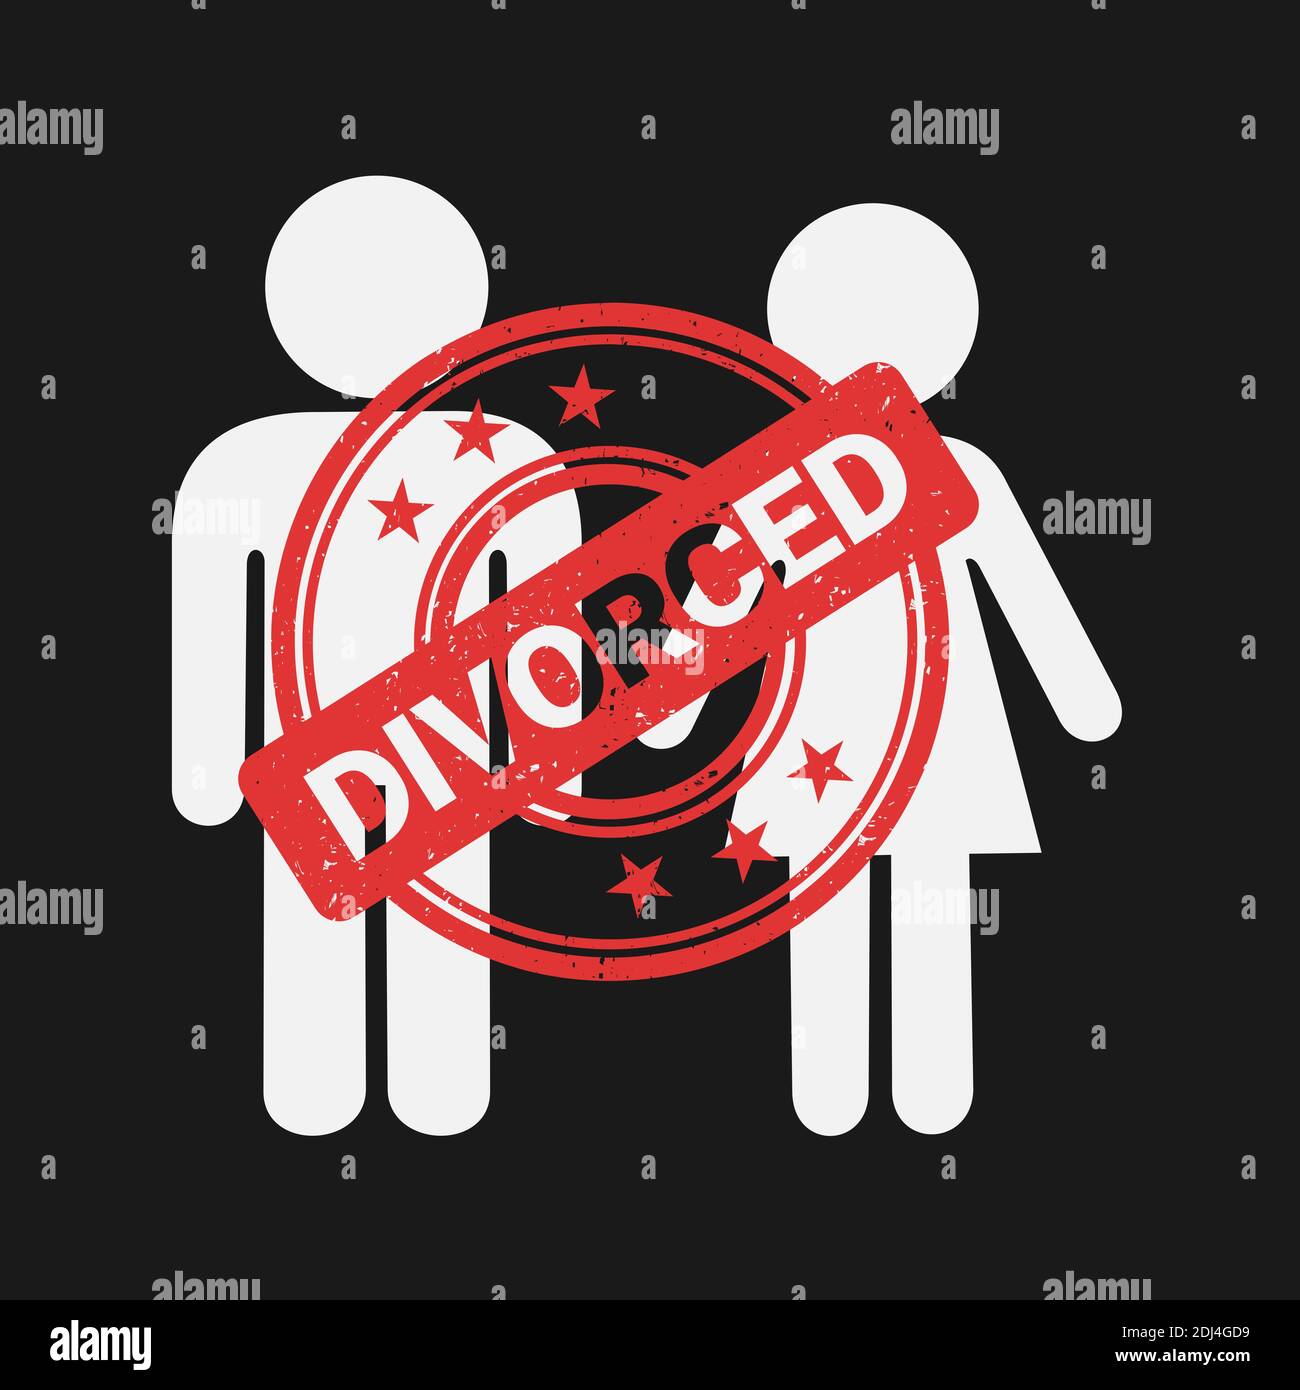 Le couple est officiellement divorcé. Fin et fin du mariage entre l'homme et la femme, la femme et le mari. Illustration vectorielle Banque D'Images